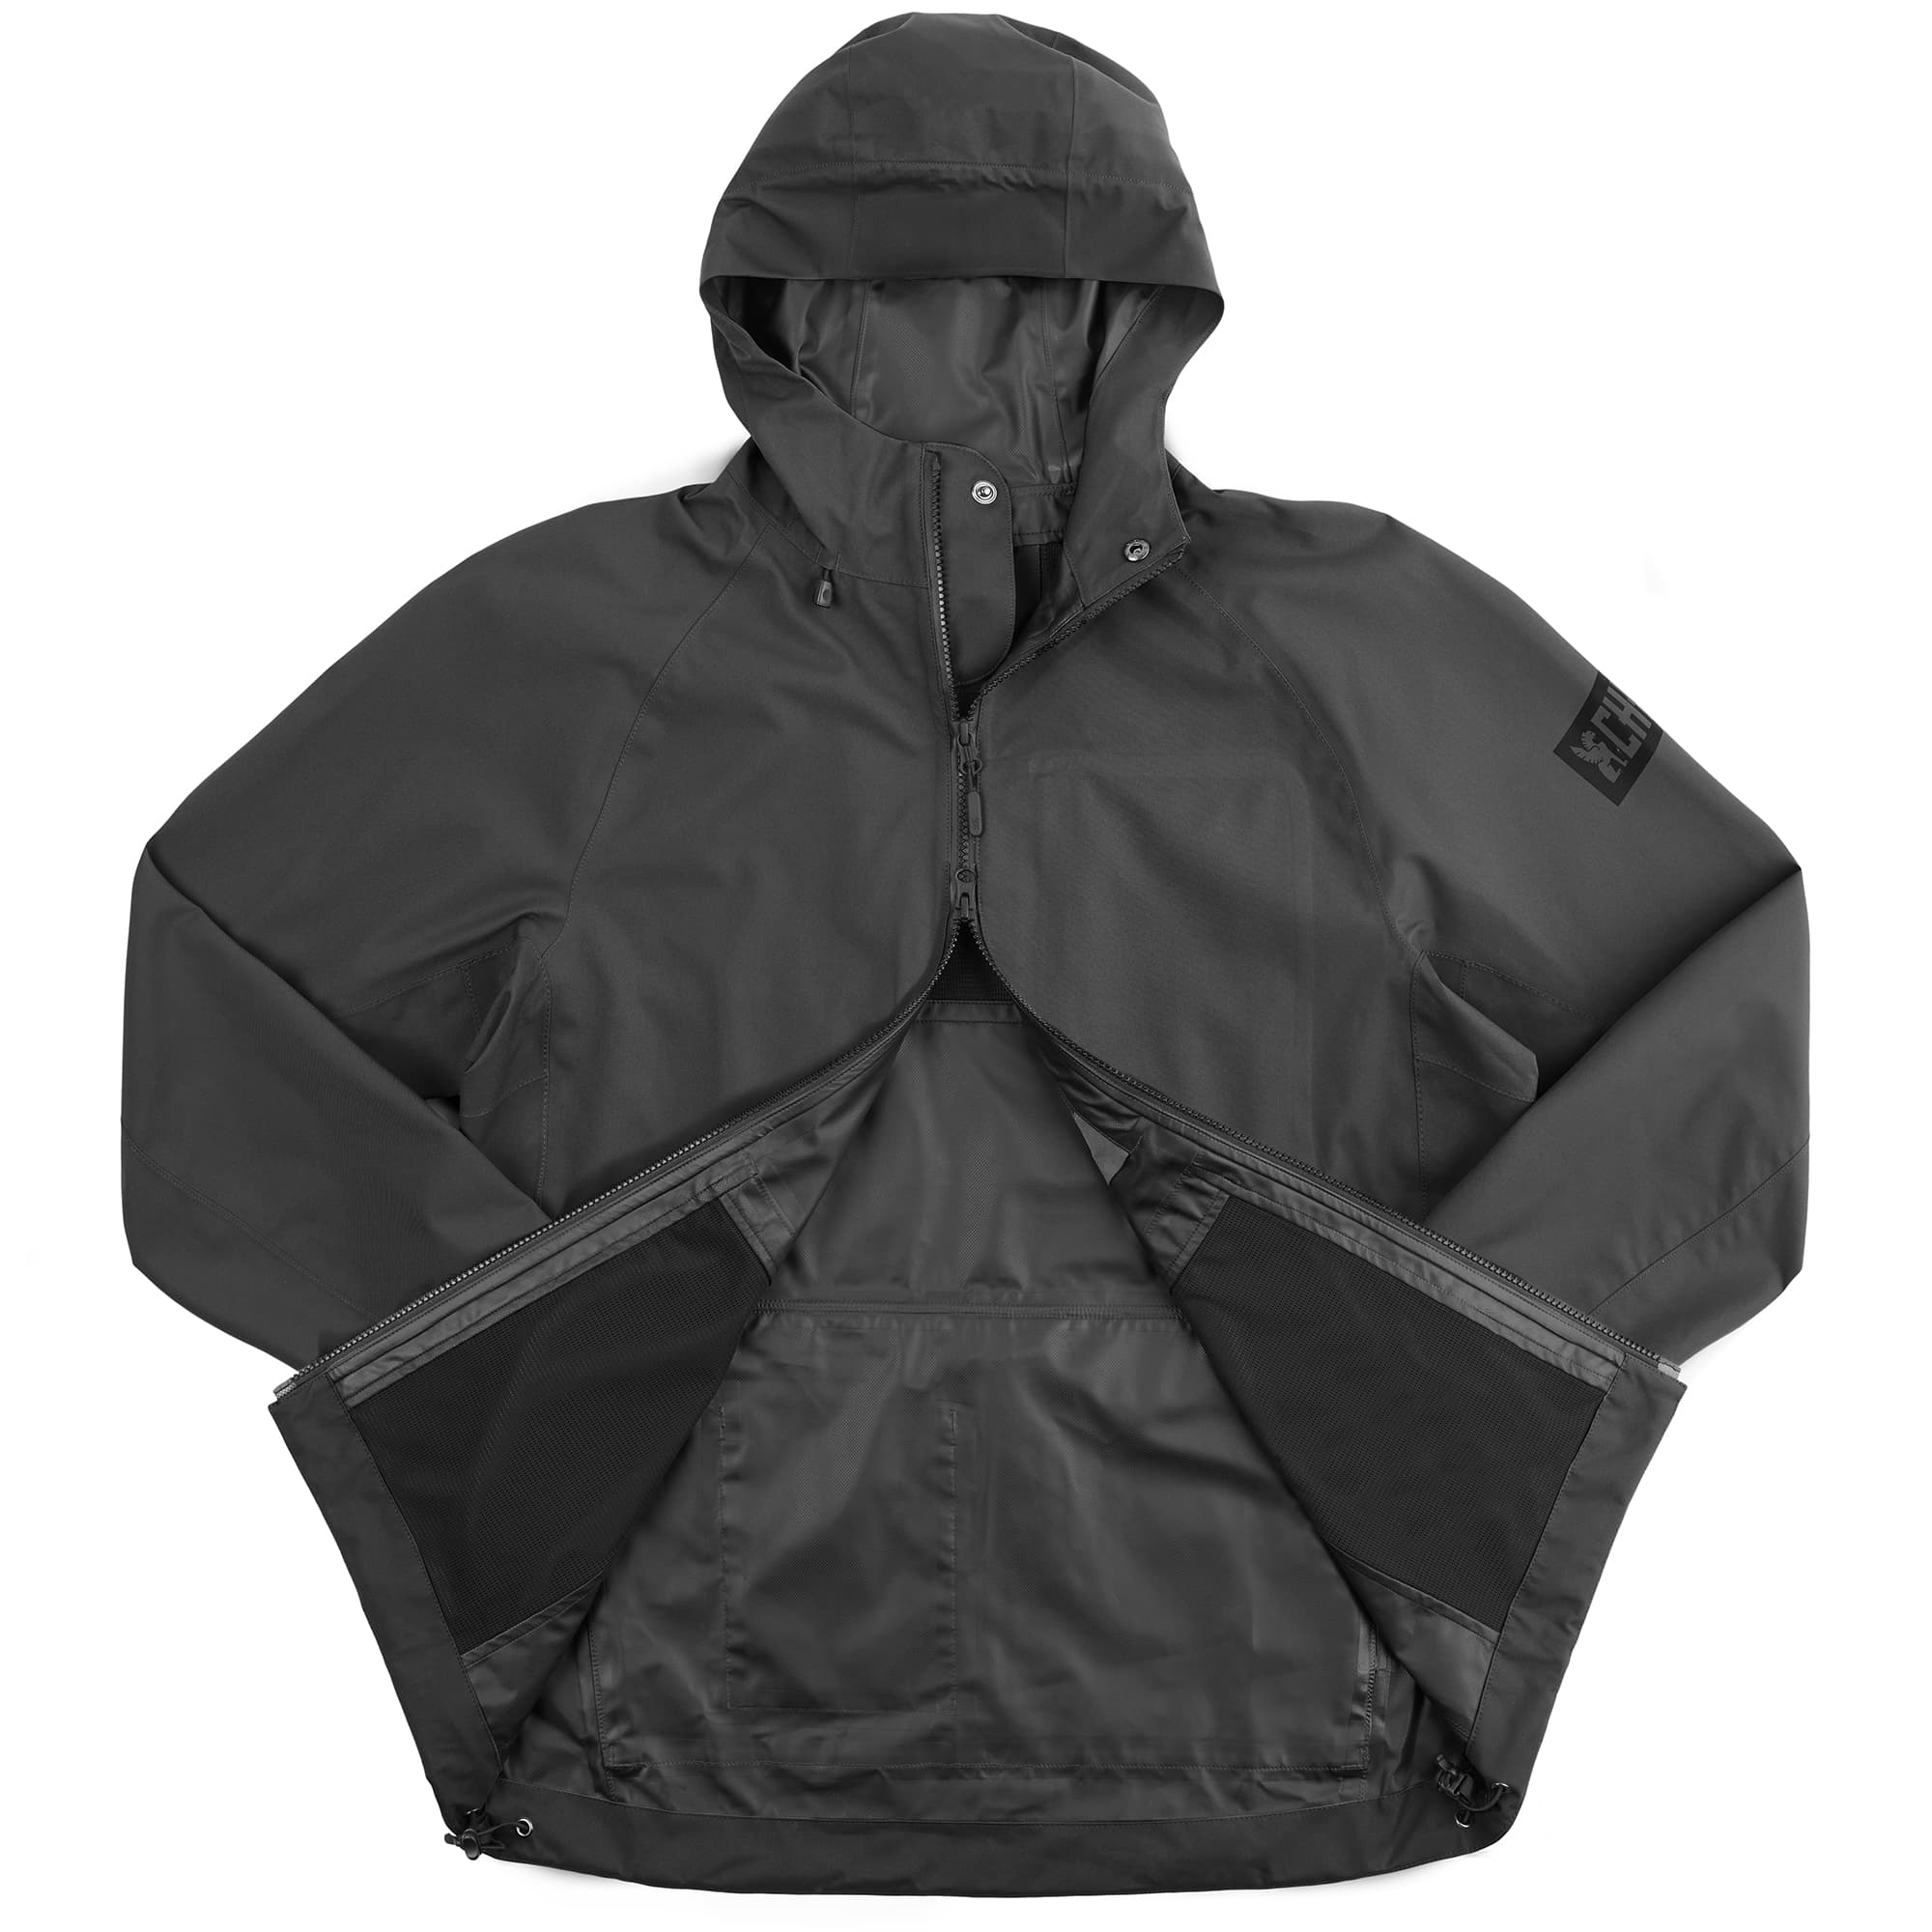 Waterproof rain jacket in black 2-way zipper